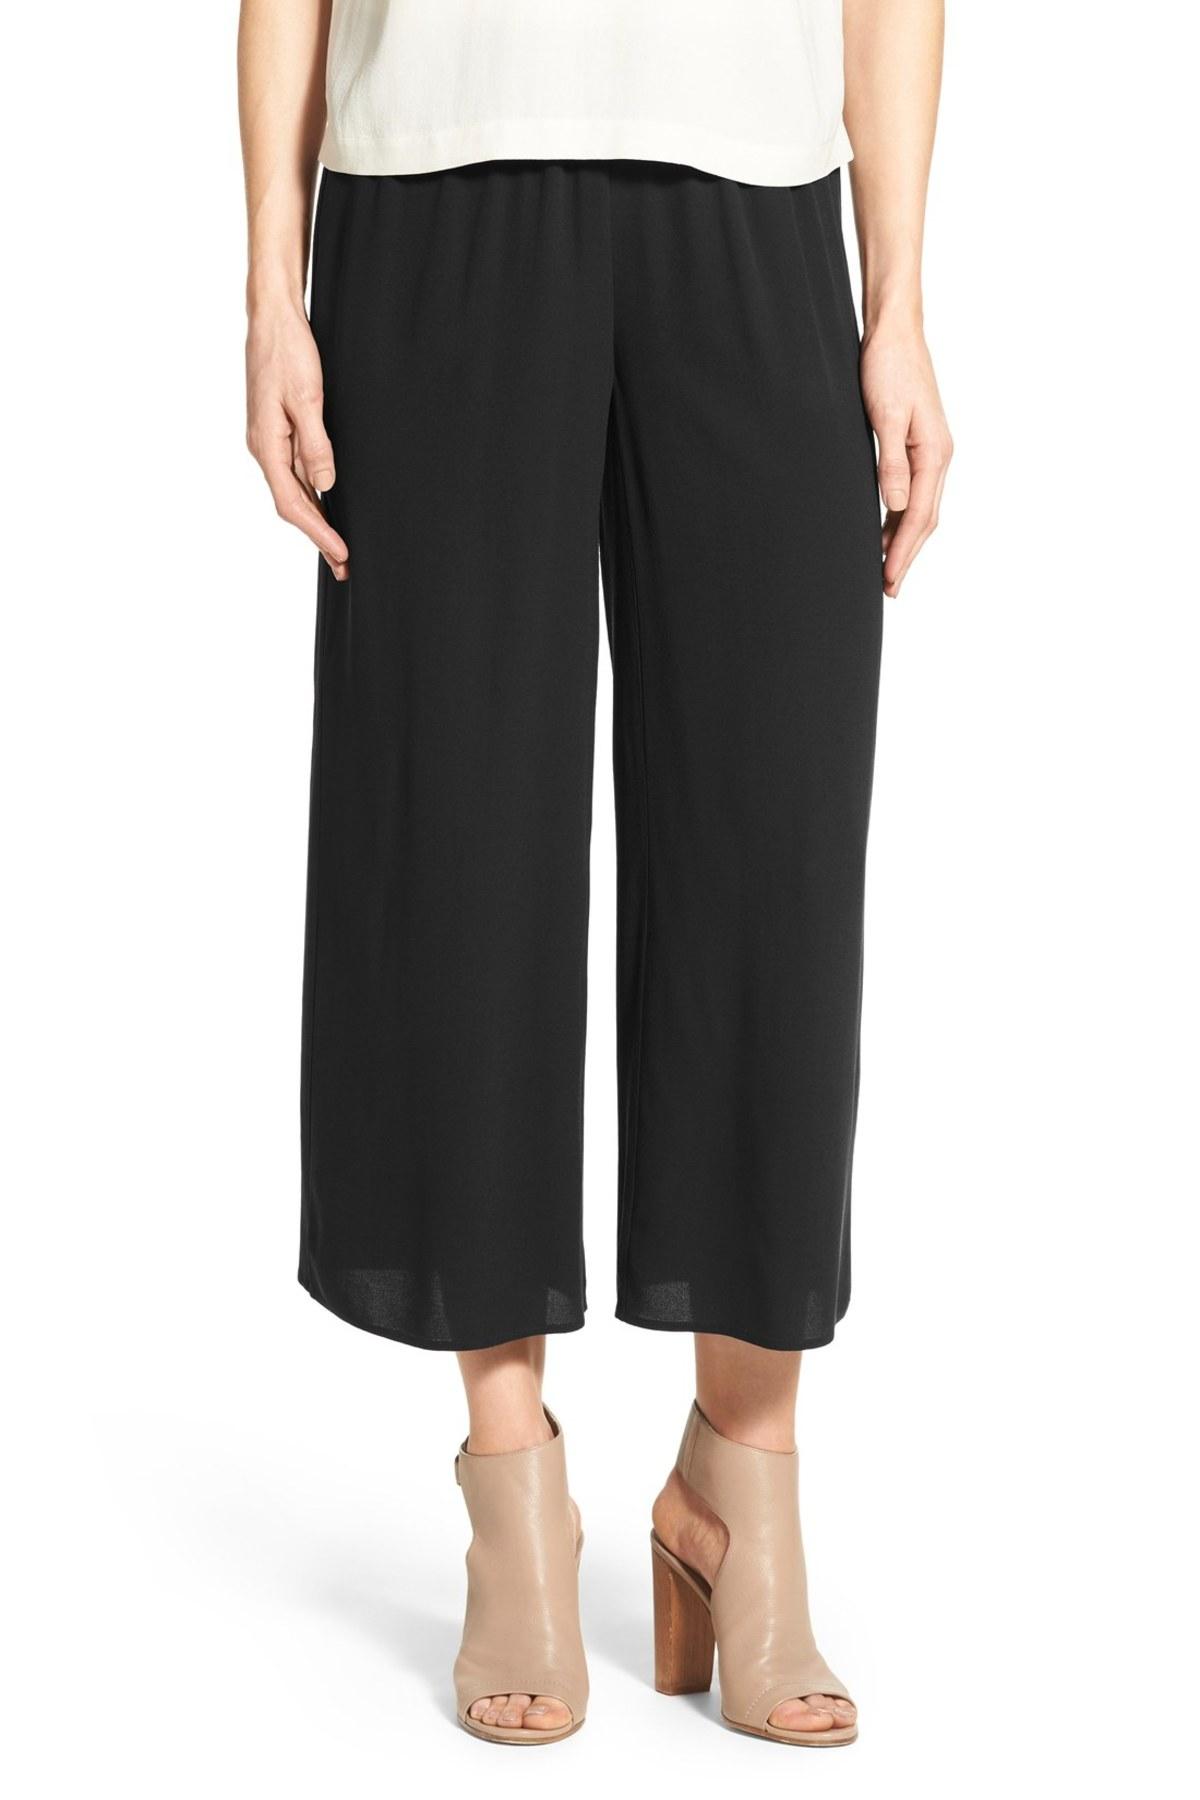 Eileen Fisher Silk Wide Leg Crop Pants in Black - Lyst